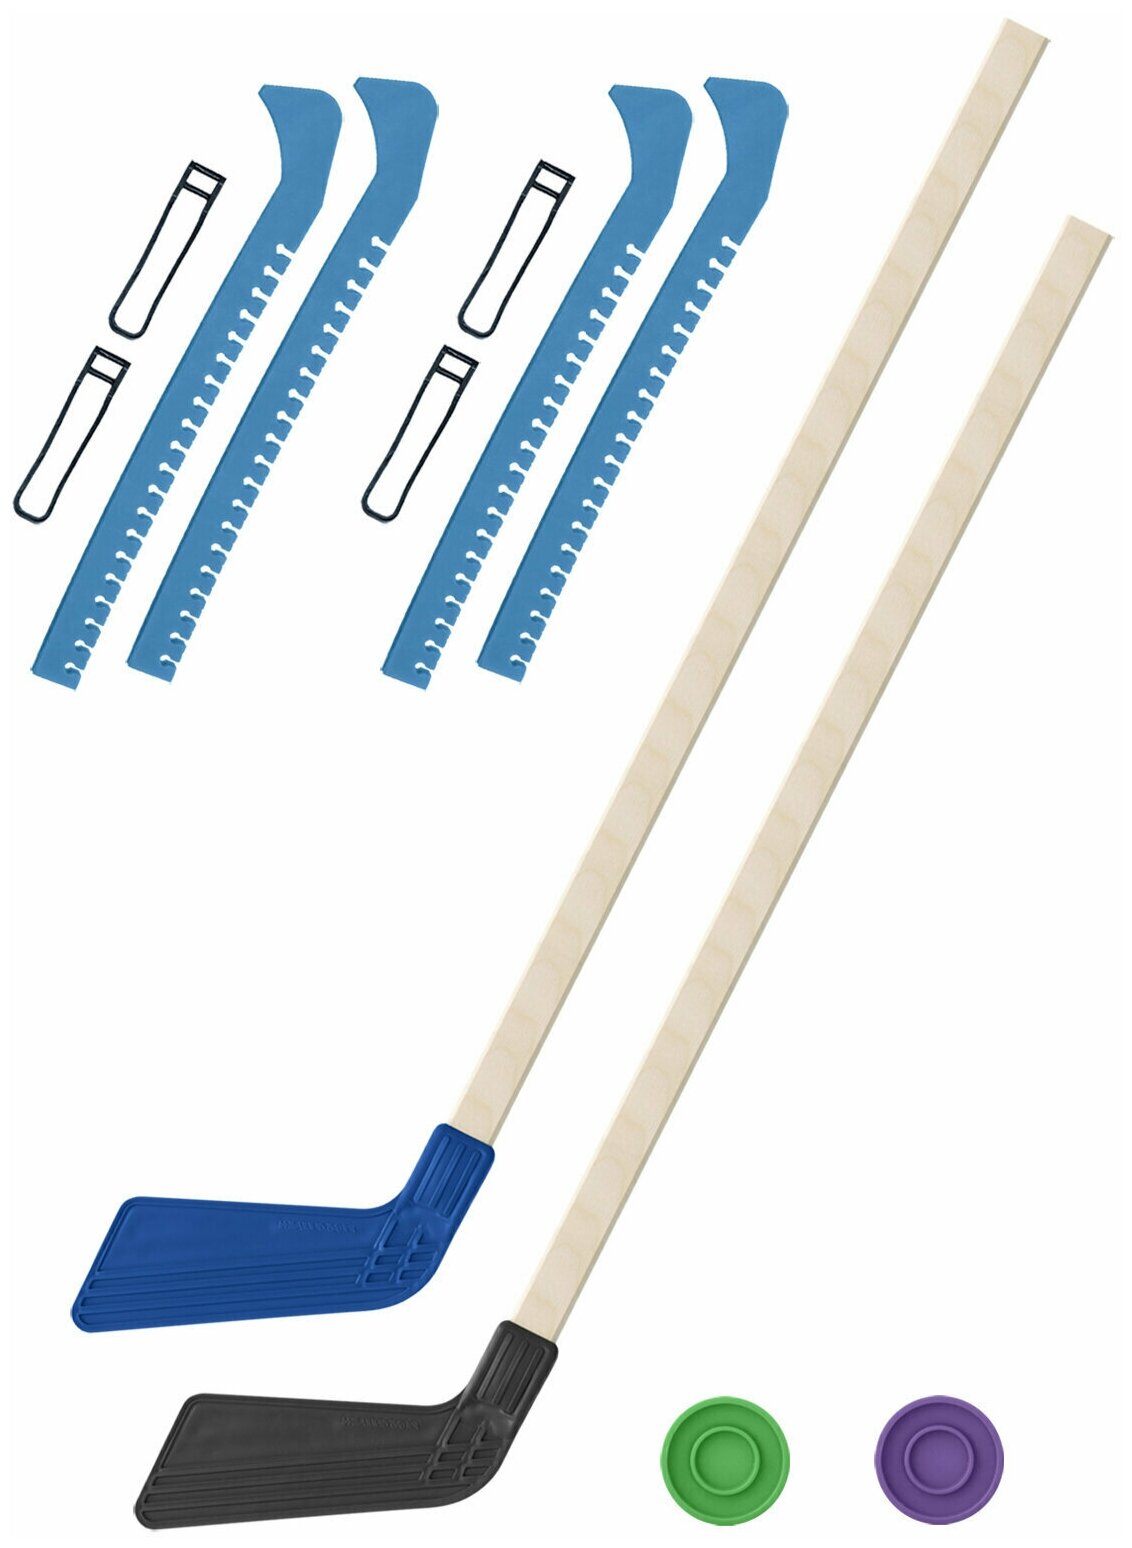 Детский хоккейный набор для игр на улице Клюшка хоккейная детская 2 шт синяя и чёрная 80 см. + 2 шайбы + Чехлы для коньков голубые - 2 шт.